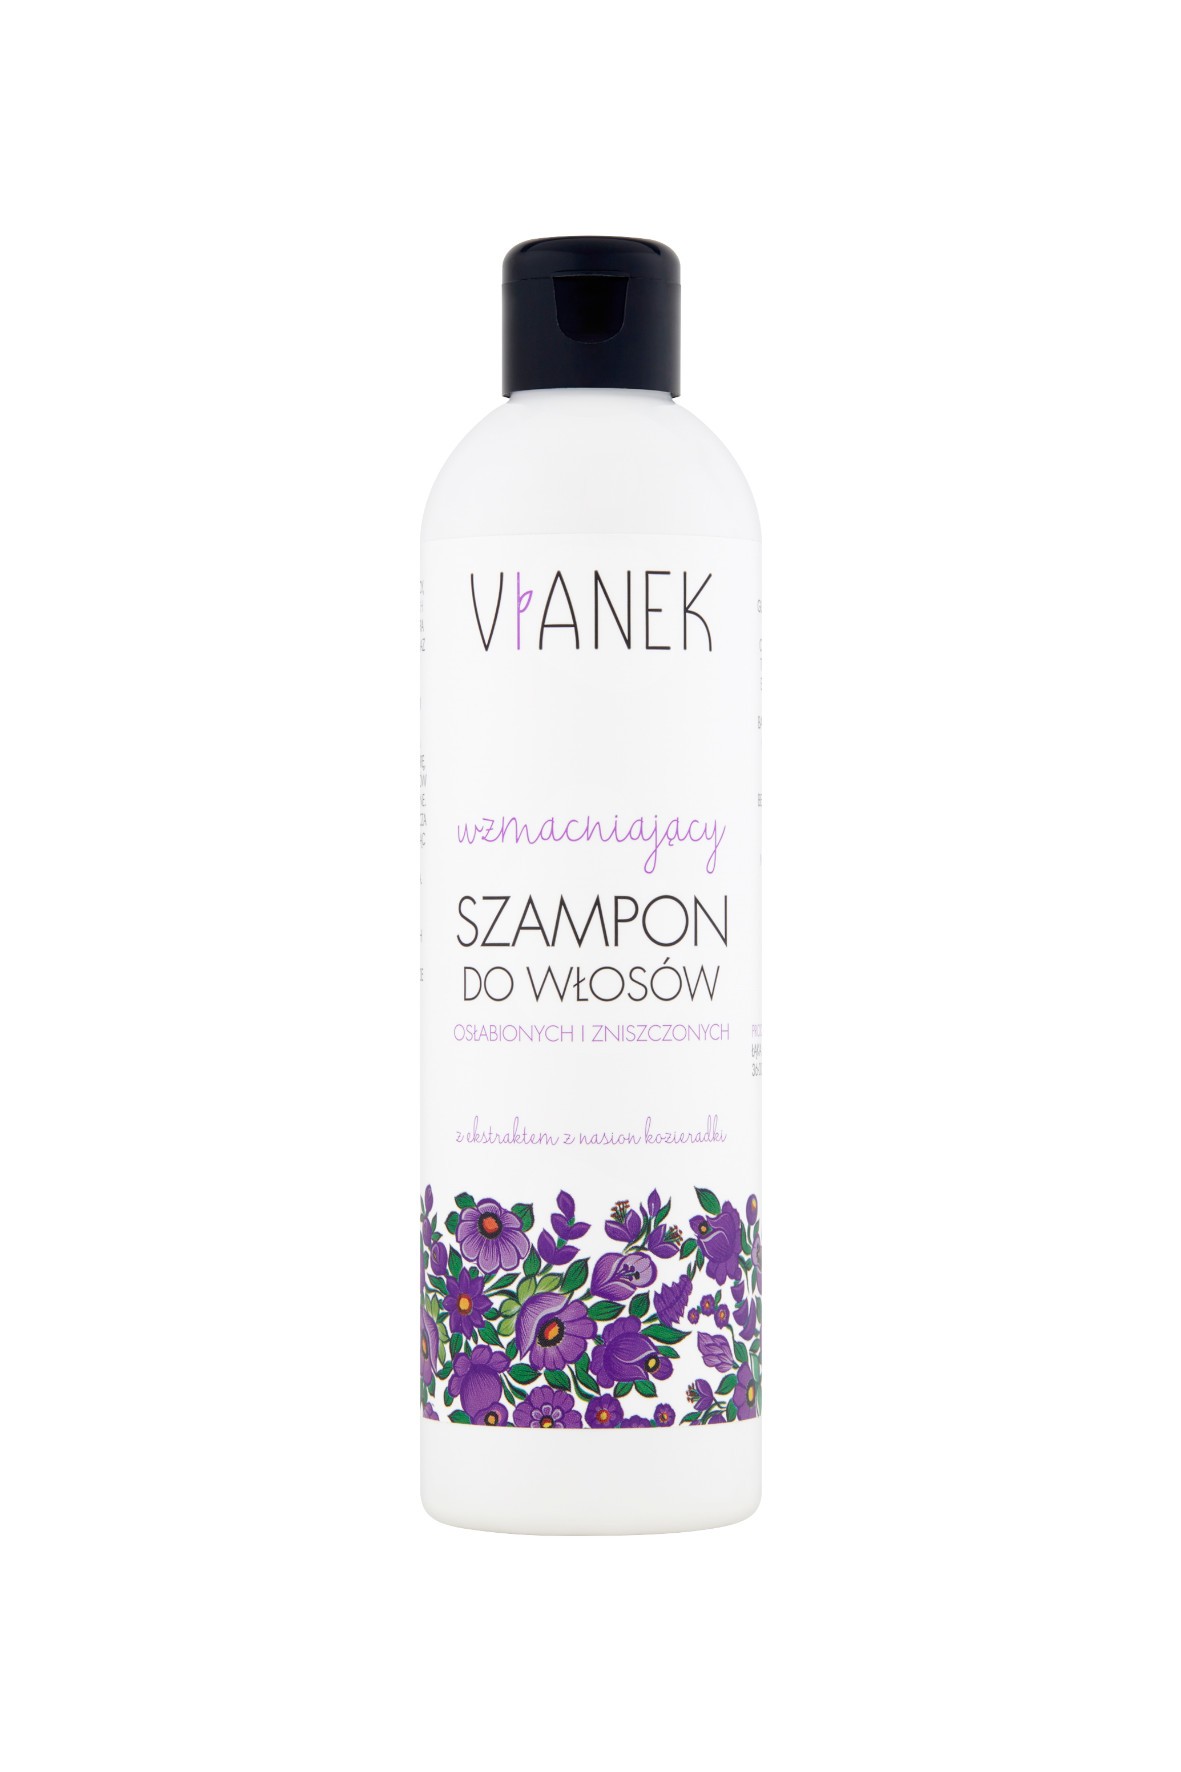 Wzmacniający szampon do włosów osłabionych i zniszczonych Vianek  300 ml